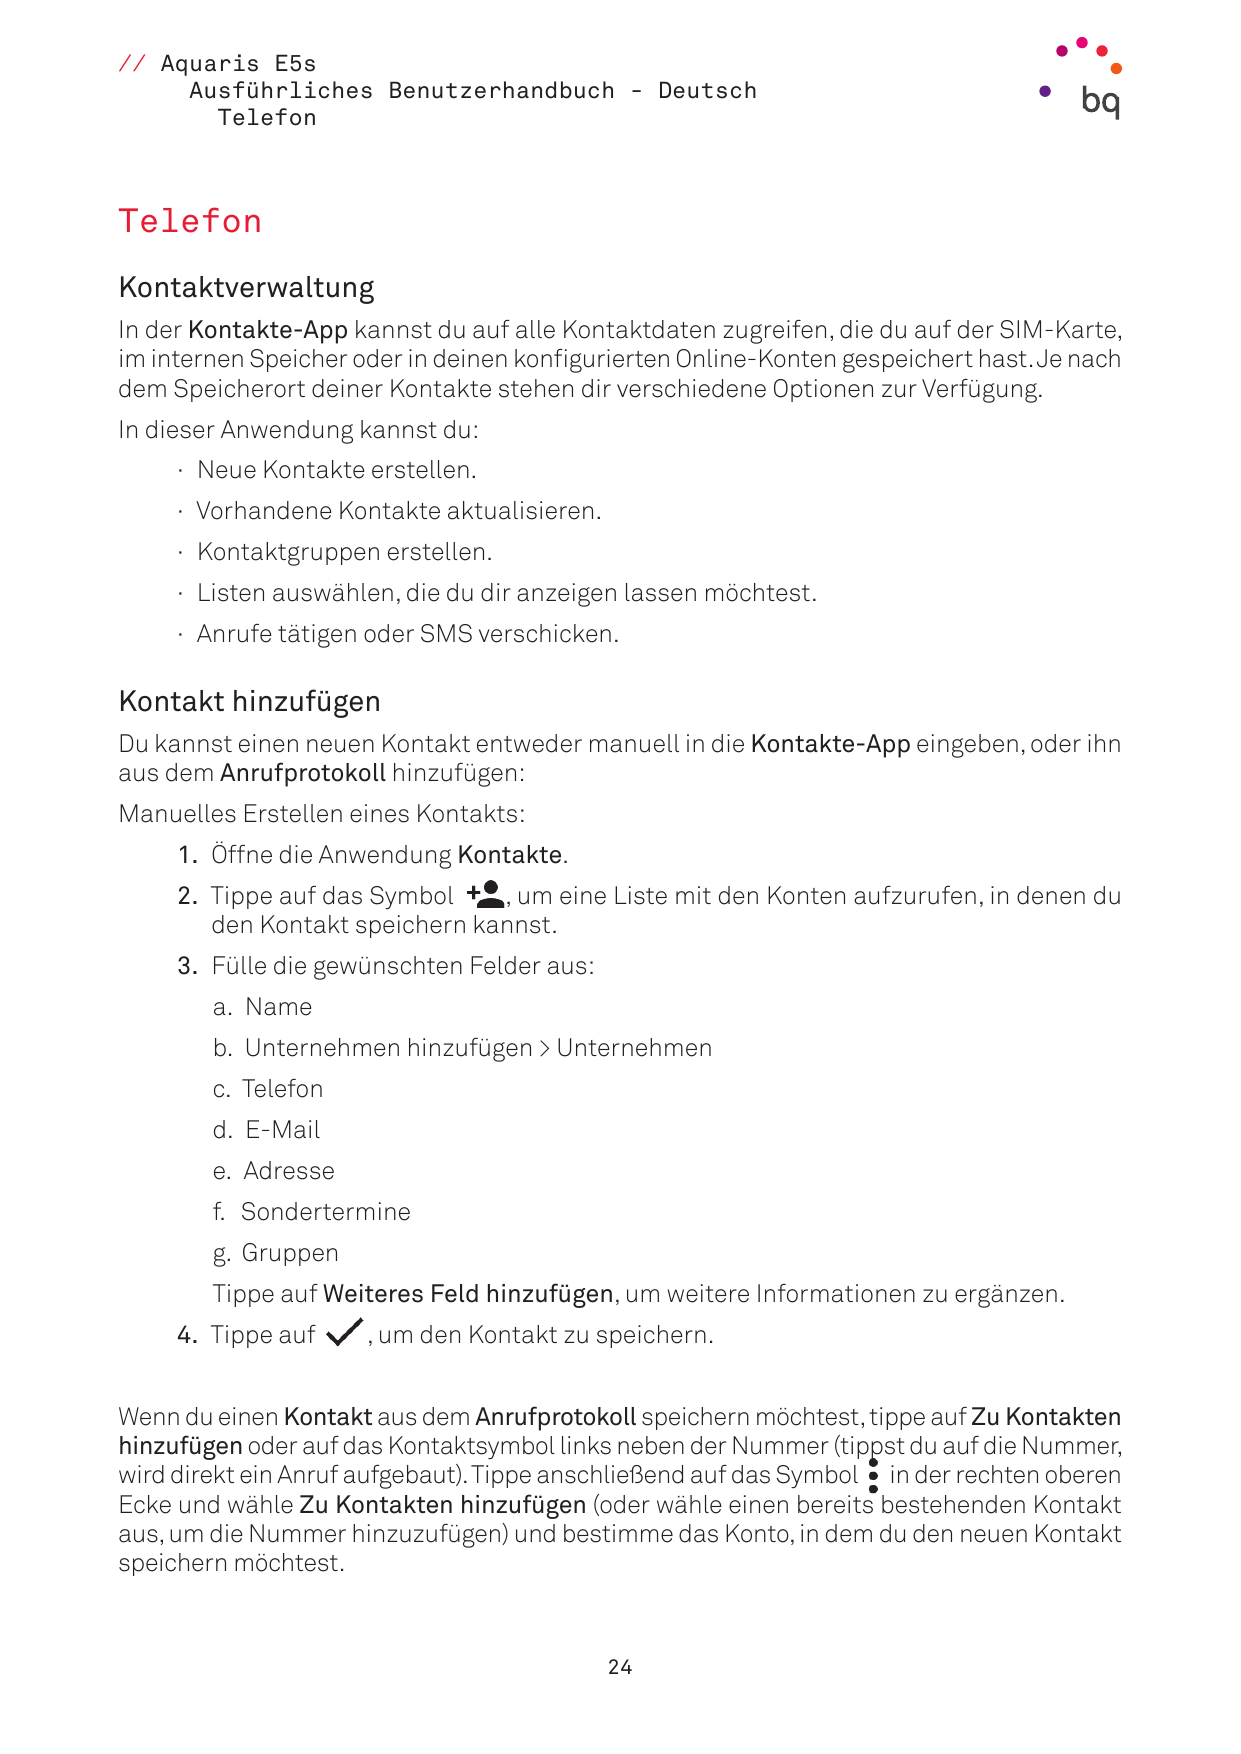 // Aquaris E5sAusführliches Benutzerhandbuch - DeutschTelefonTelefonKontaktverwaltungIn der Kontakte-App kannst du auf alle Kont